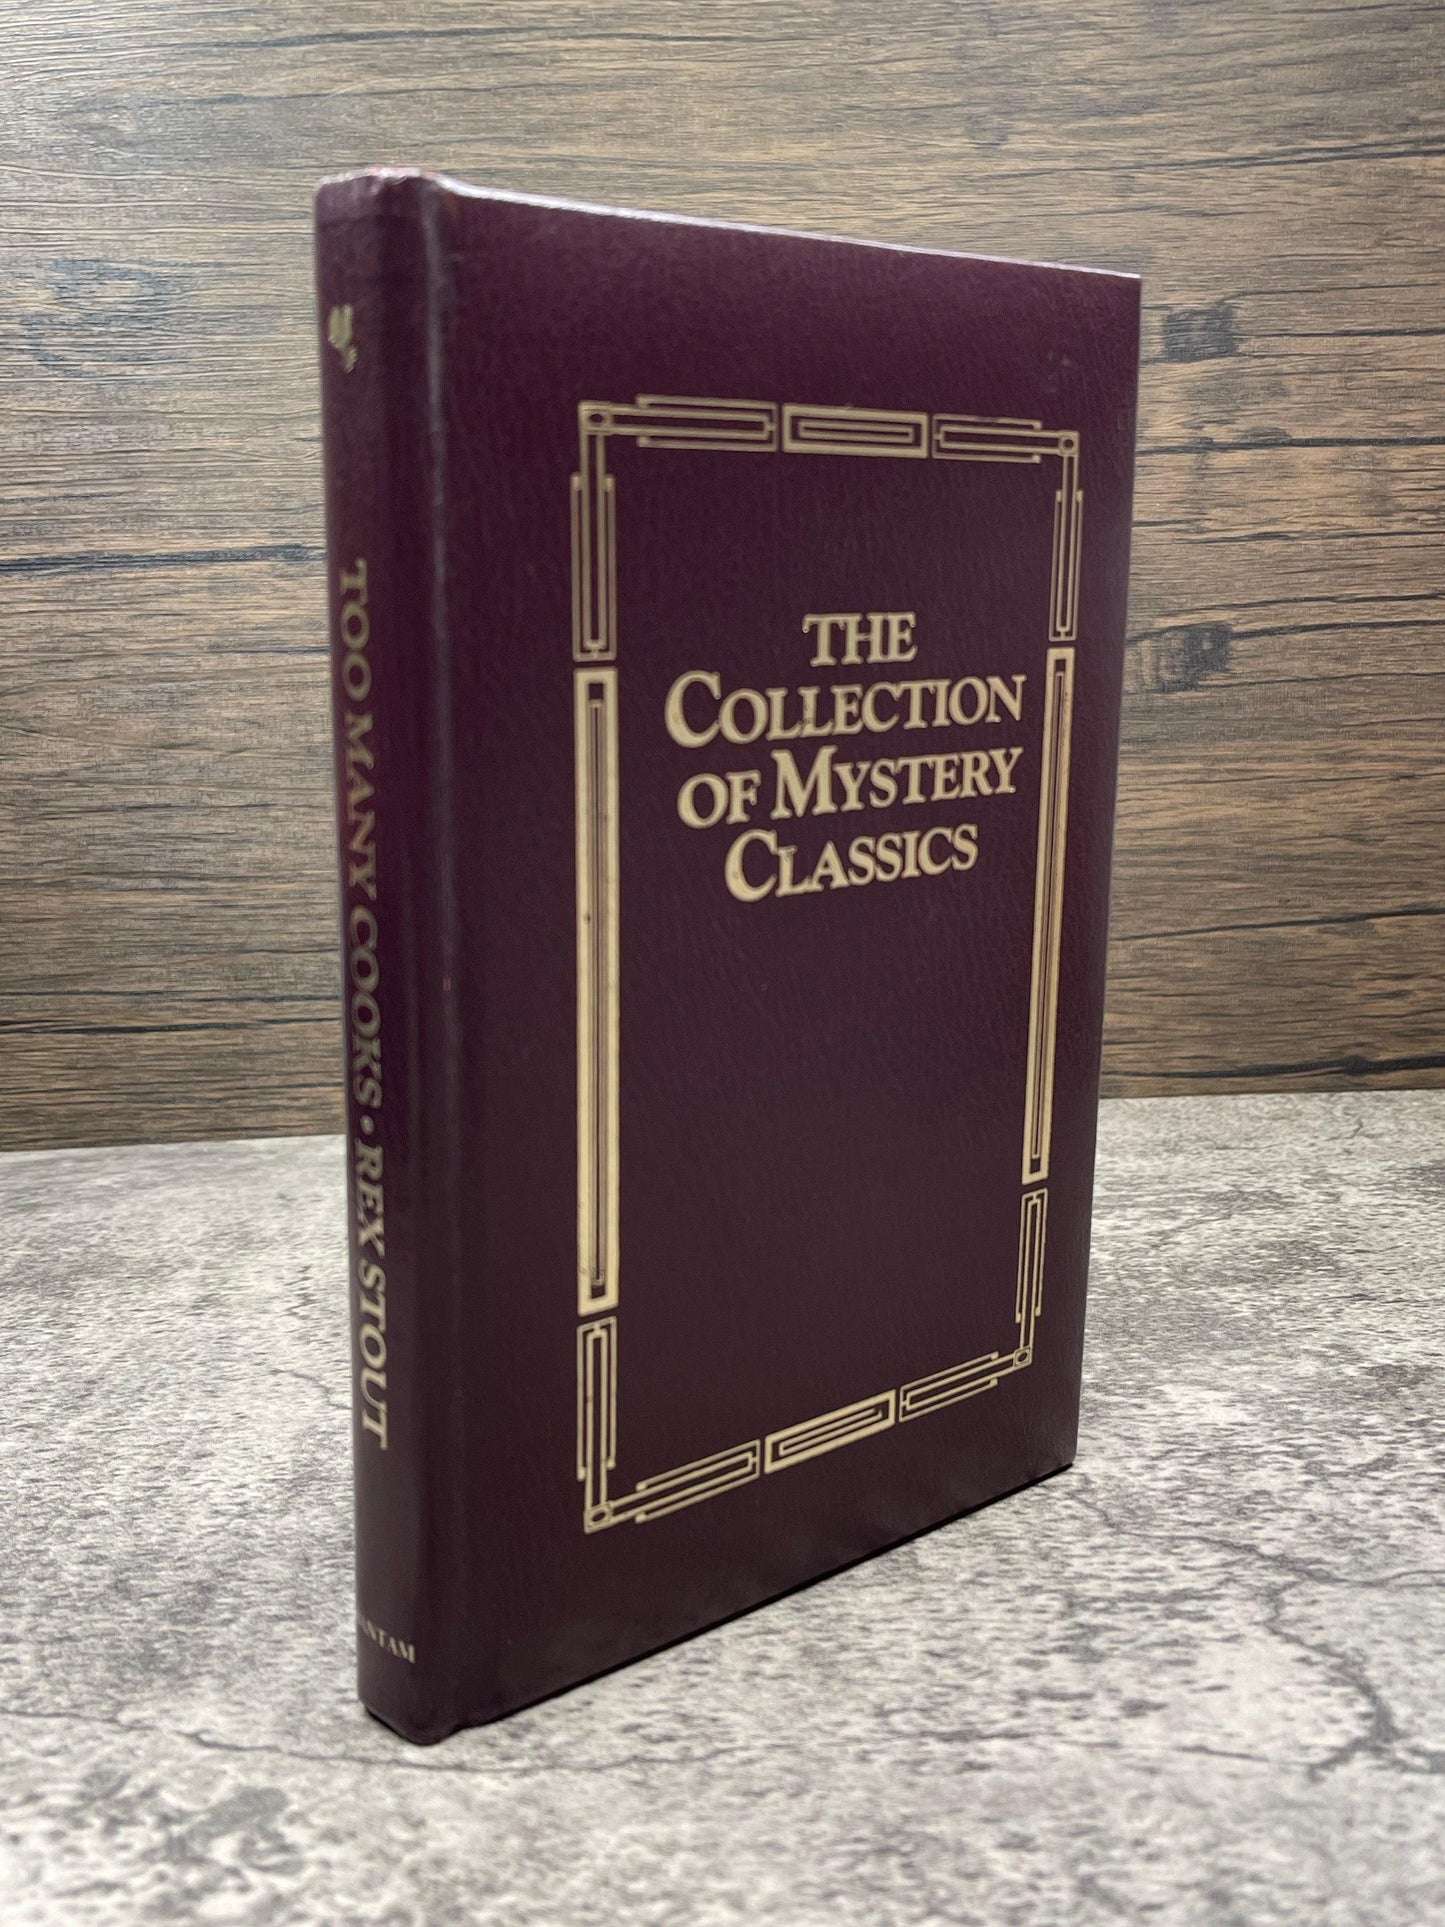 Too Many Cooks: 50 Classics of Crime Fiction 1900-1950 - Precious Cache